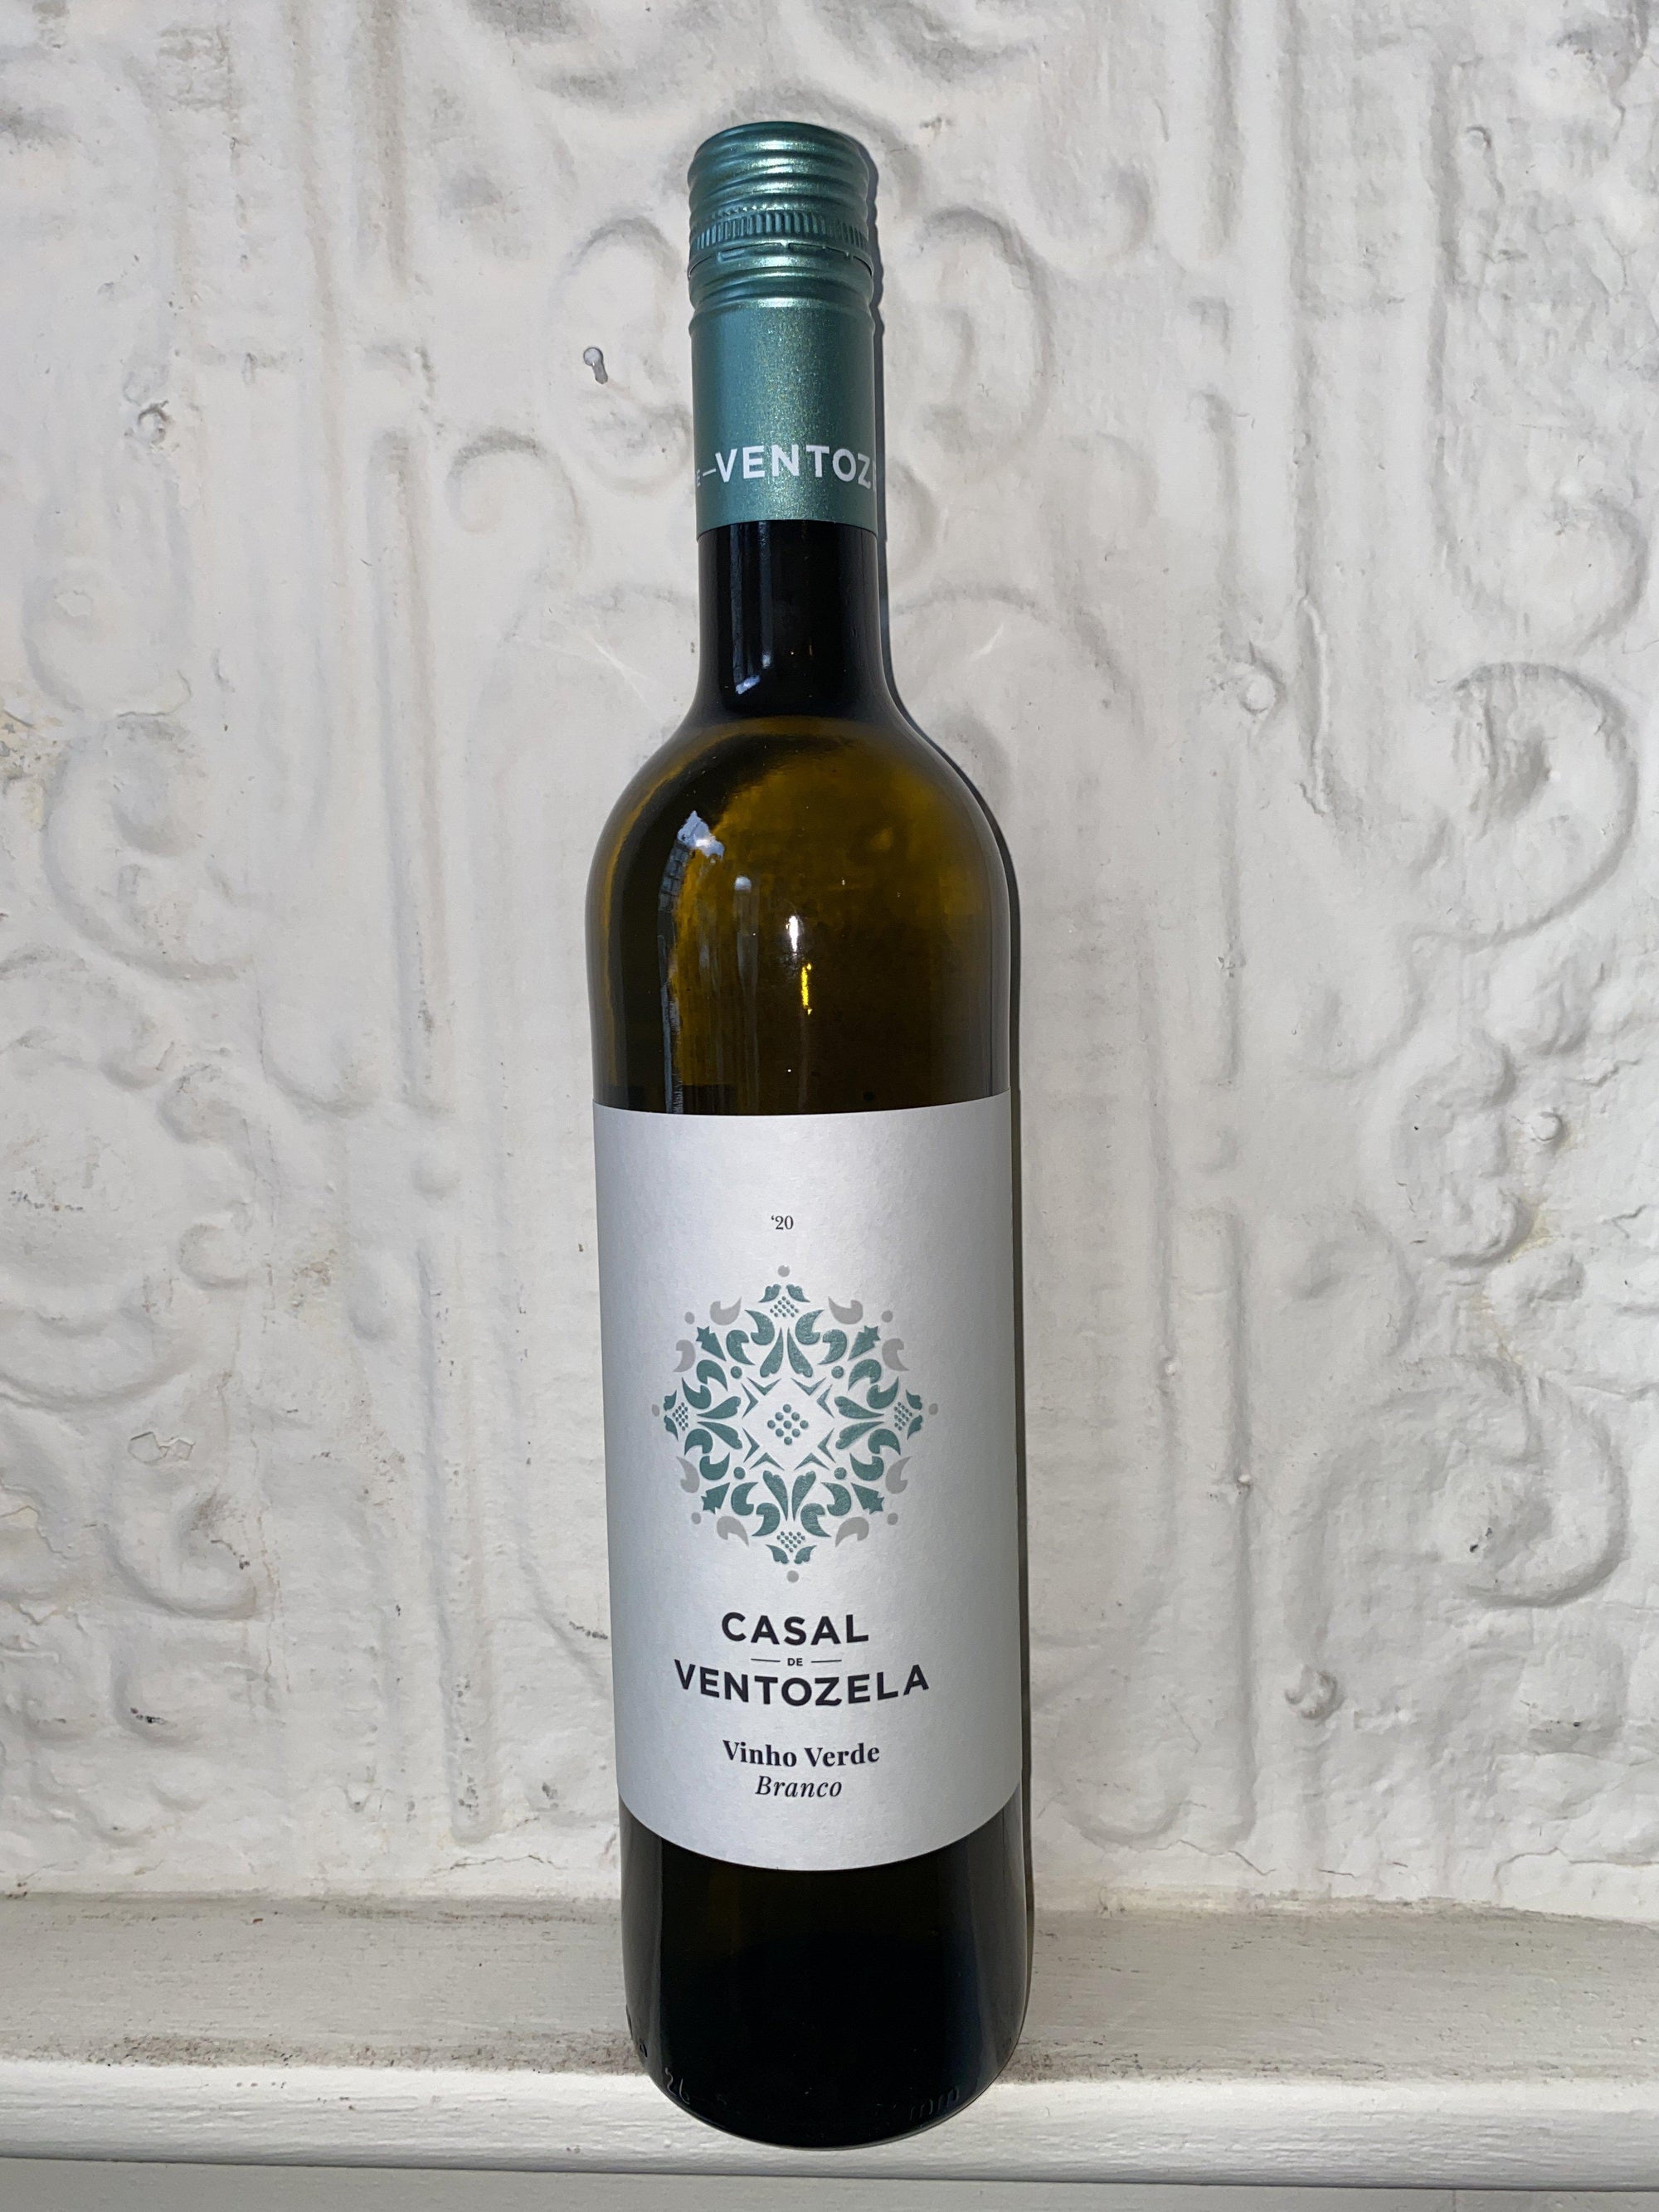 Vinho Verde, Casal de Ventozela 2020 (Minho, Portugal)-Wine-Bibber & Bell